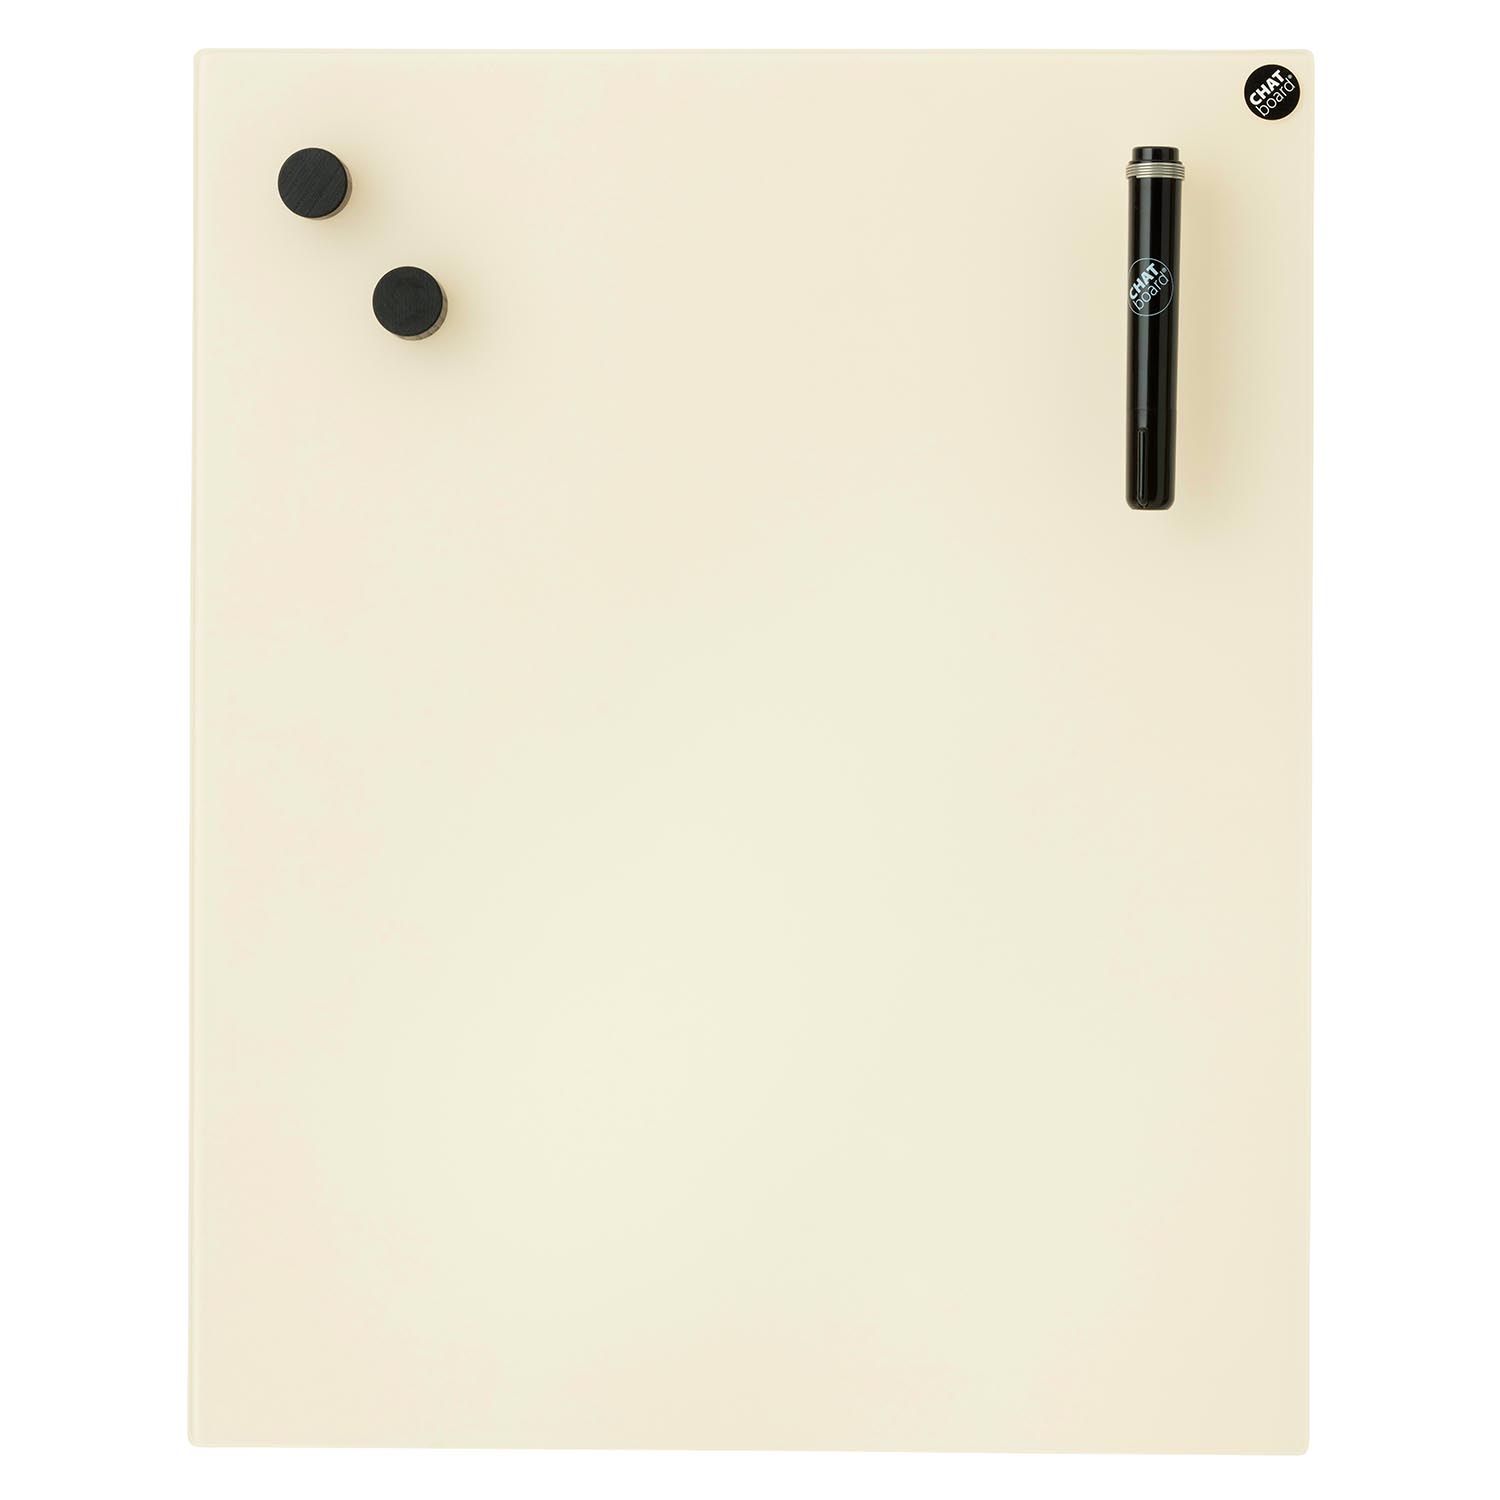 Classic Schreibtafel, Grösse 120 x 58.5 cm, Ausrichtung horizontal, Glas sky blue 39 mtsb von Chat Board